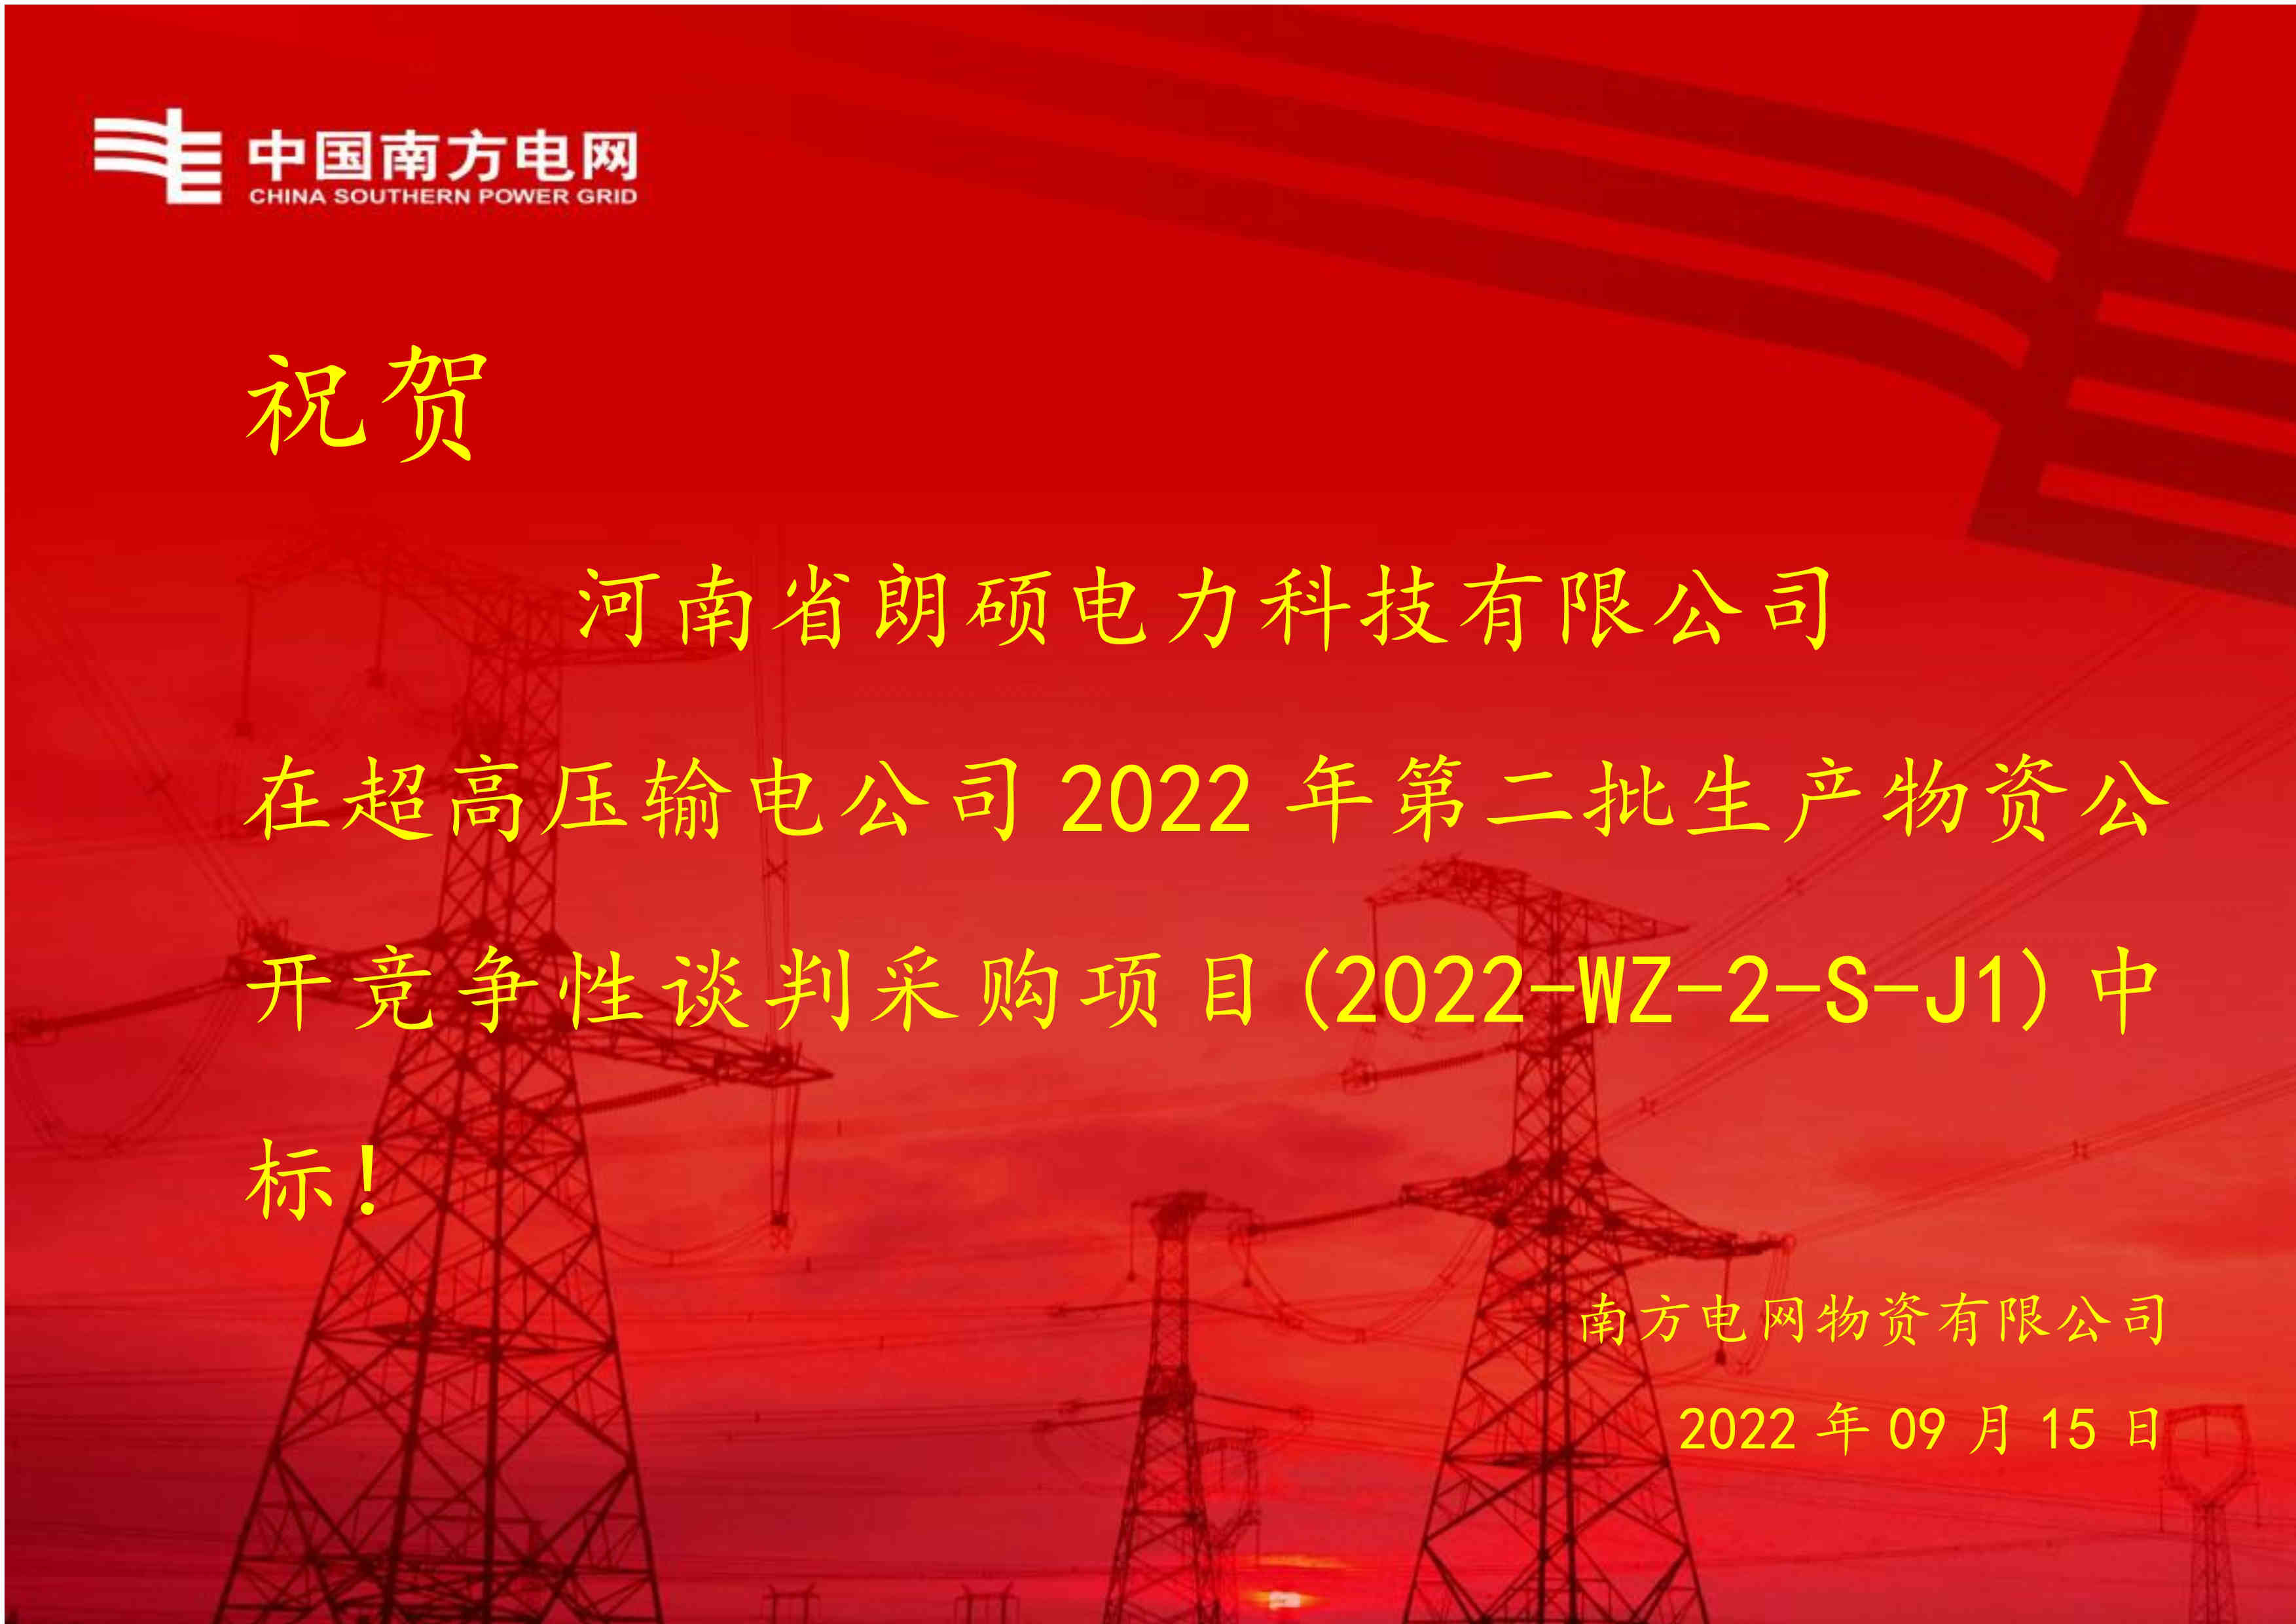 热烈祝贺河南省朗硕电力科技有限公司中标中国南方电网